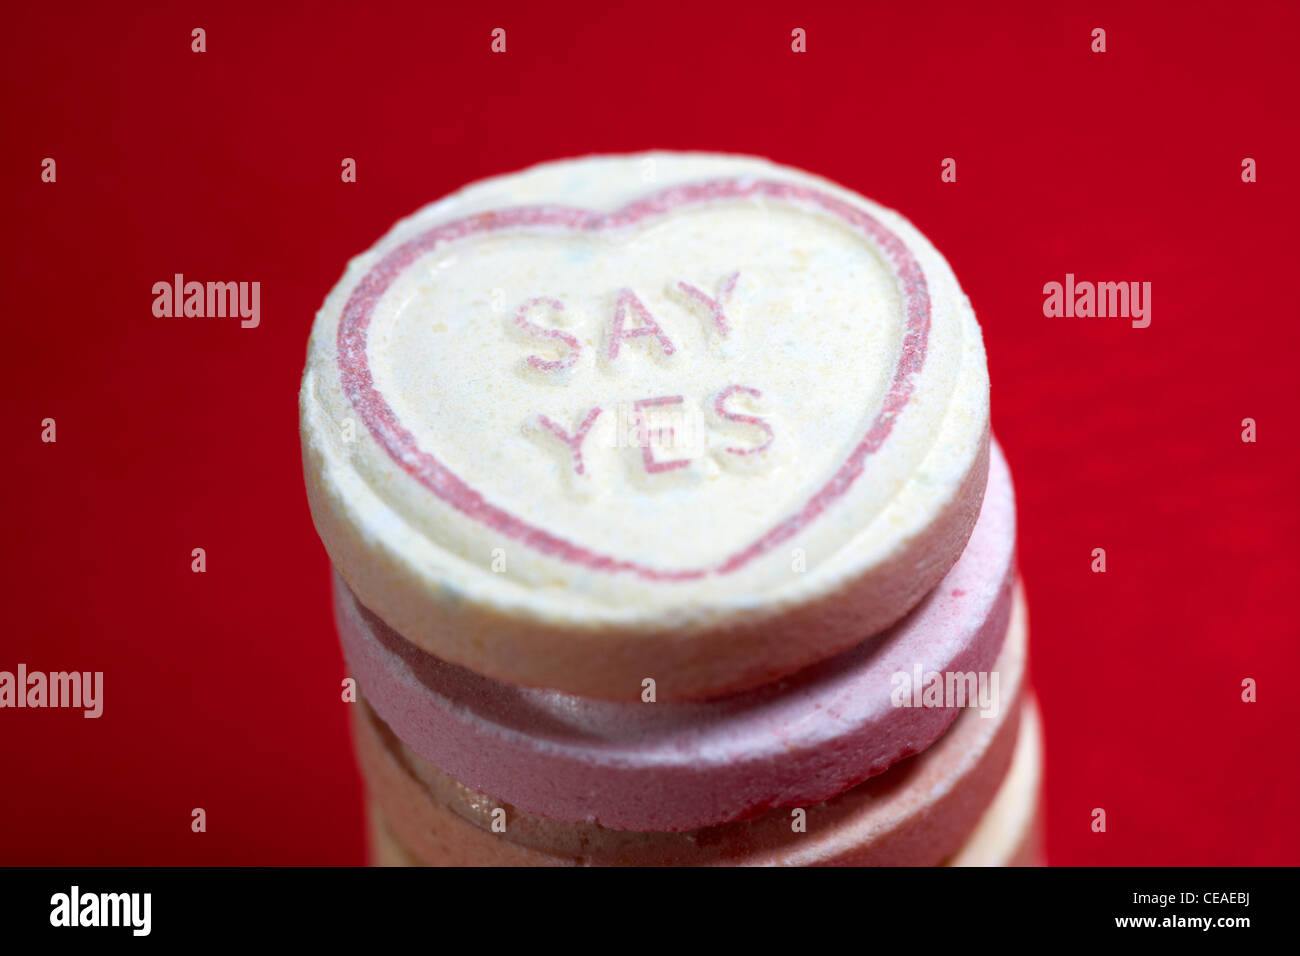 sagen Sie Ja Ehe Vorschlag Liebe Herz süß auf rotem Grund Stockfoto